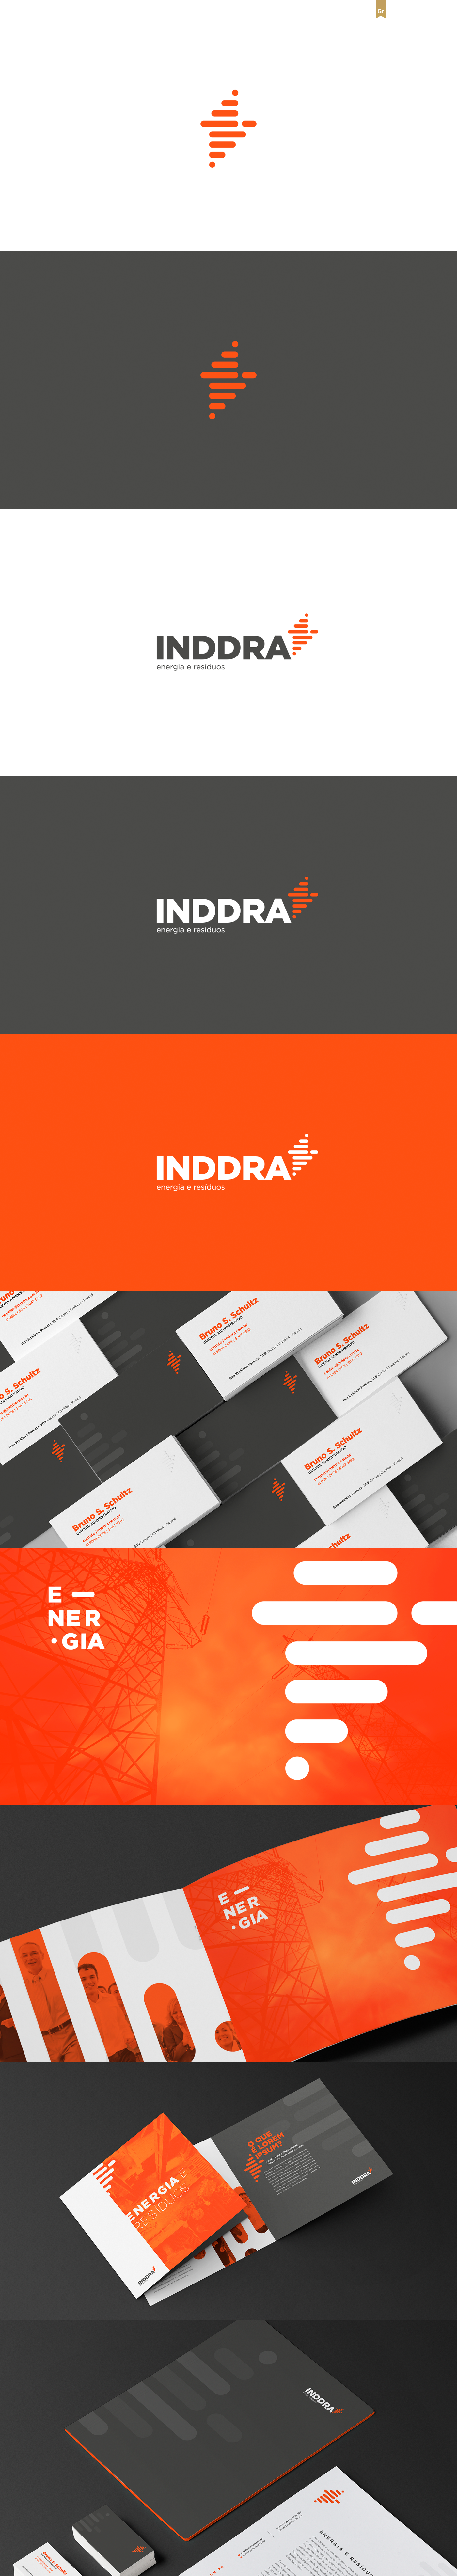 design criação logo marca laranja cinza identidade visual conceito visual